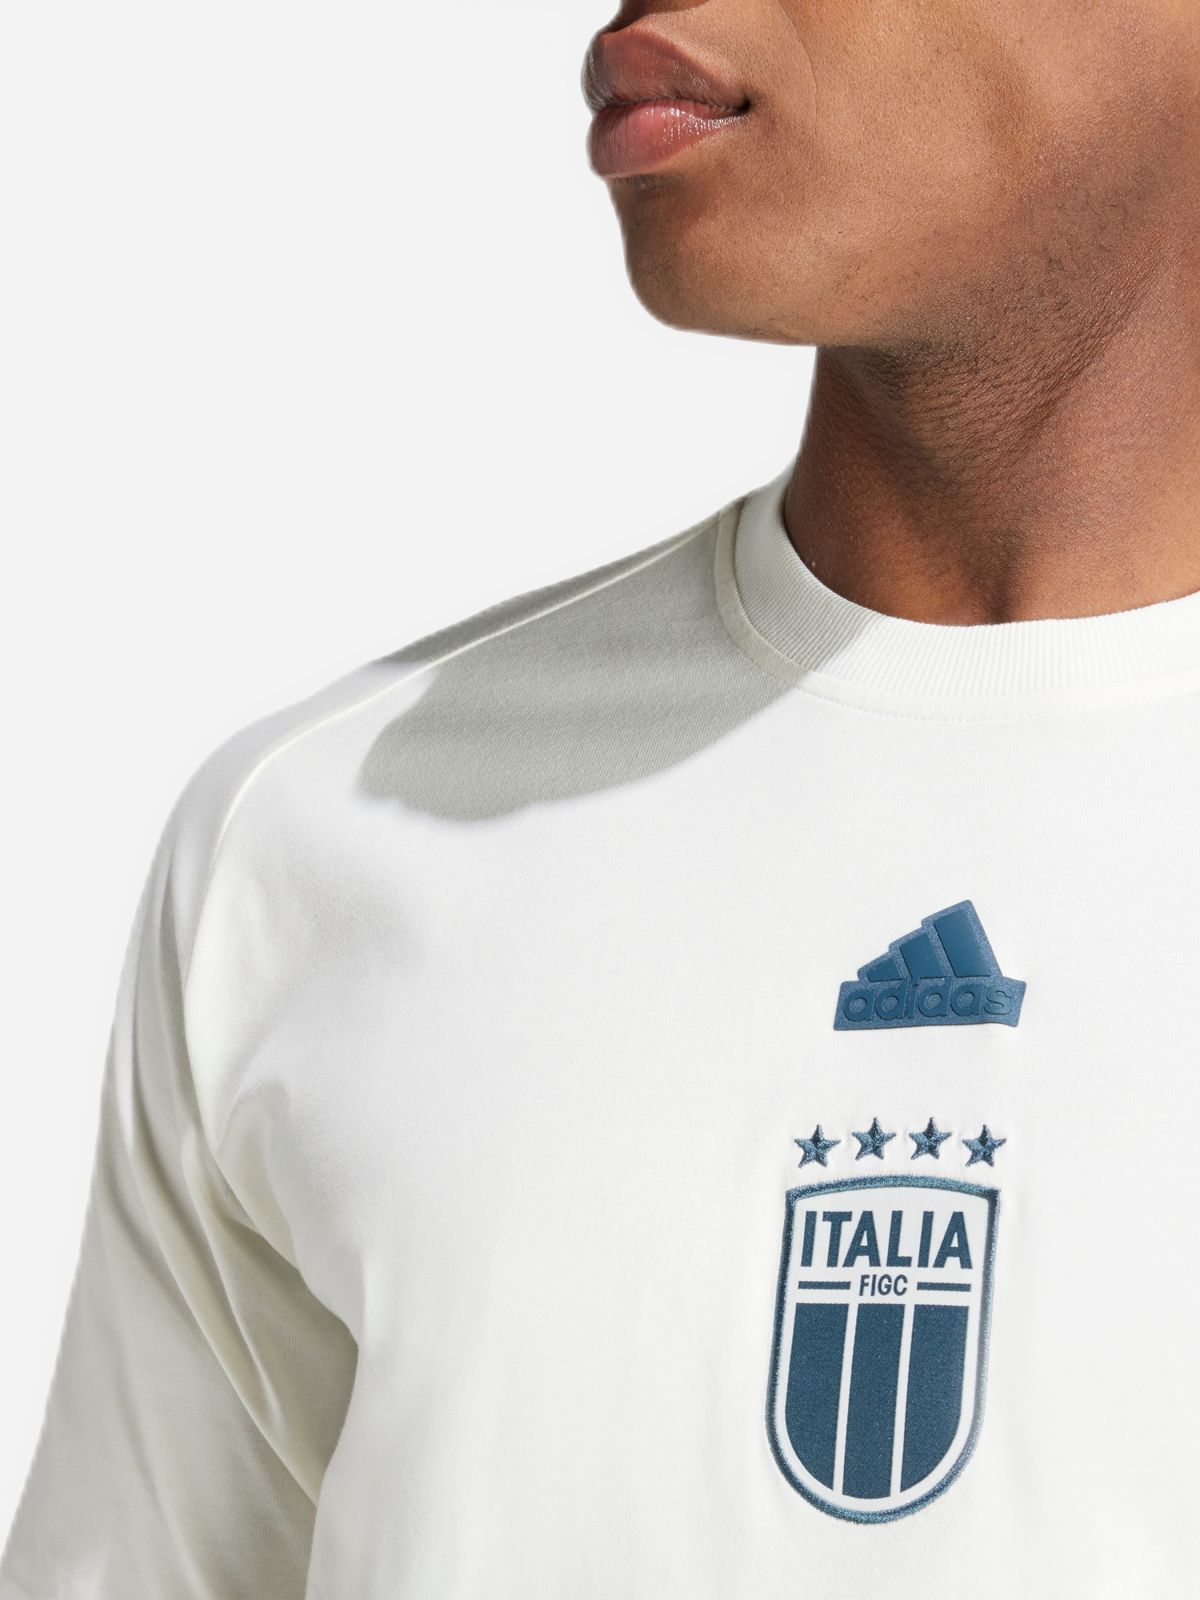  חולצת כדורגל adidas Italy Travel של ADIDAS Performance